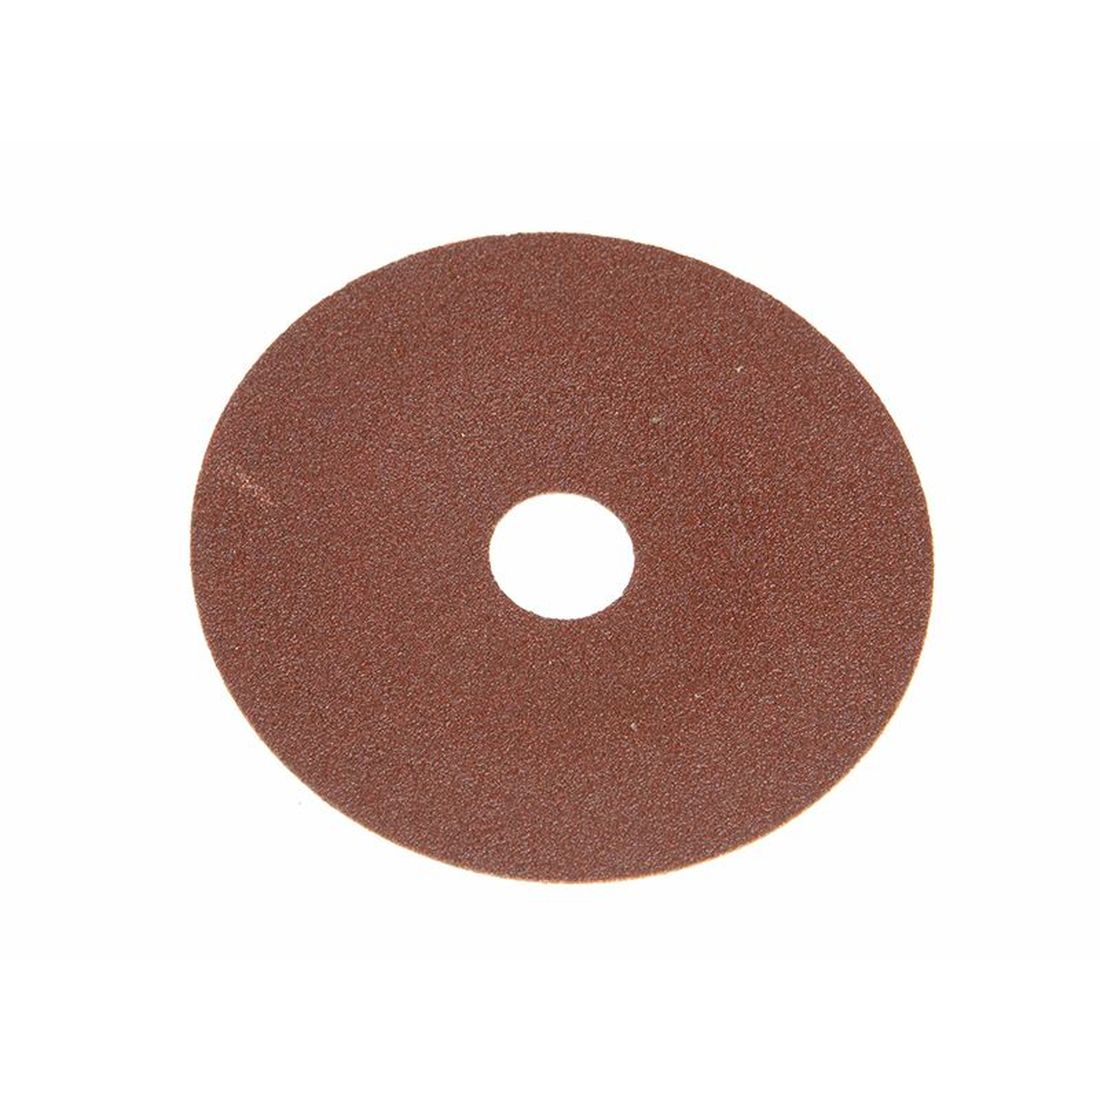 Faithfull Resin Bonded Sanding Discs 178 x 22mm 80G (Pack 25)                             